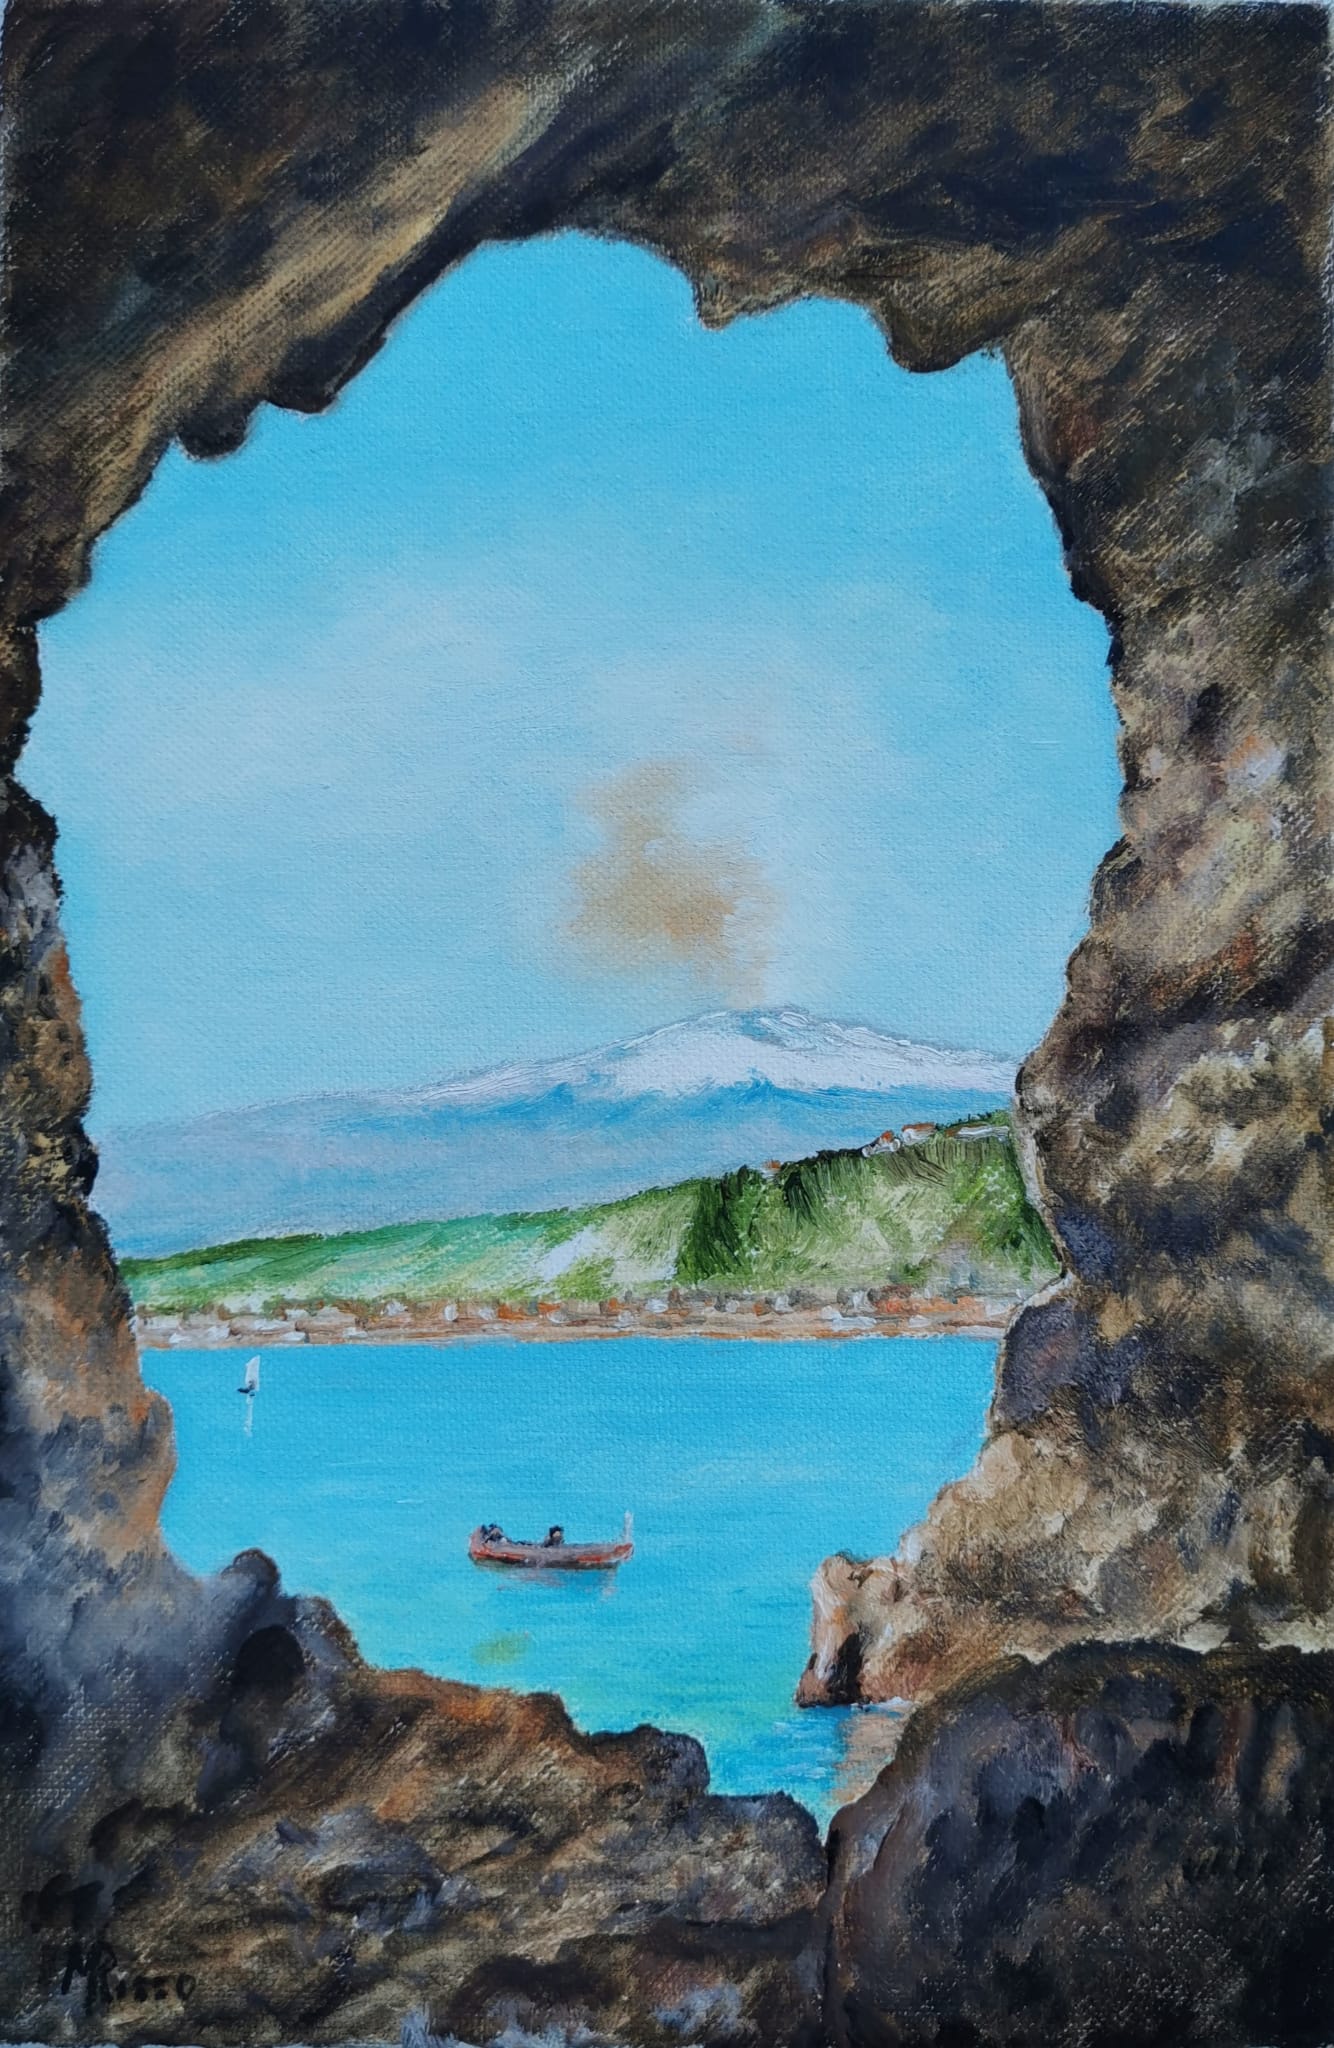 Grotta del giorno - Etna - Taormina